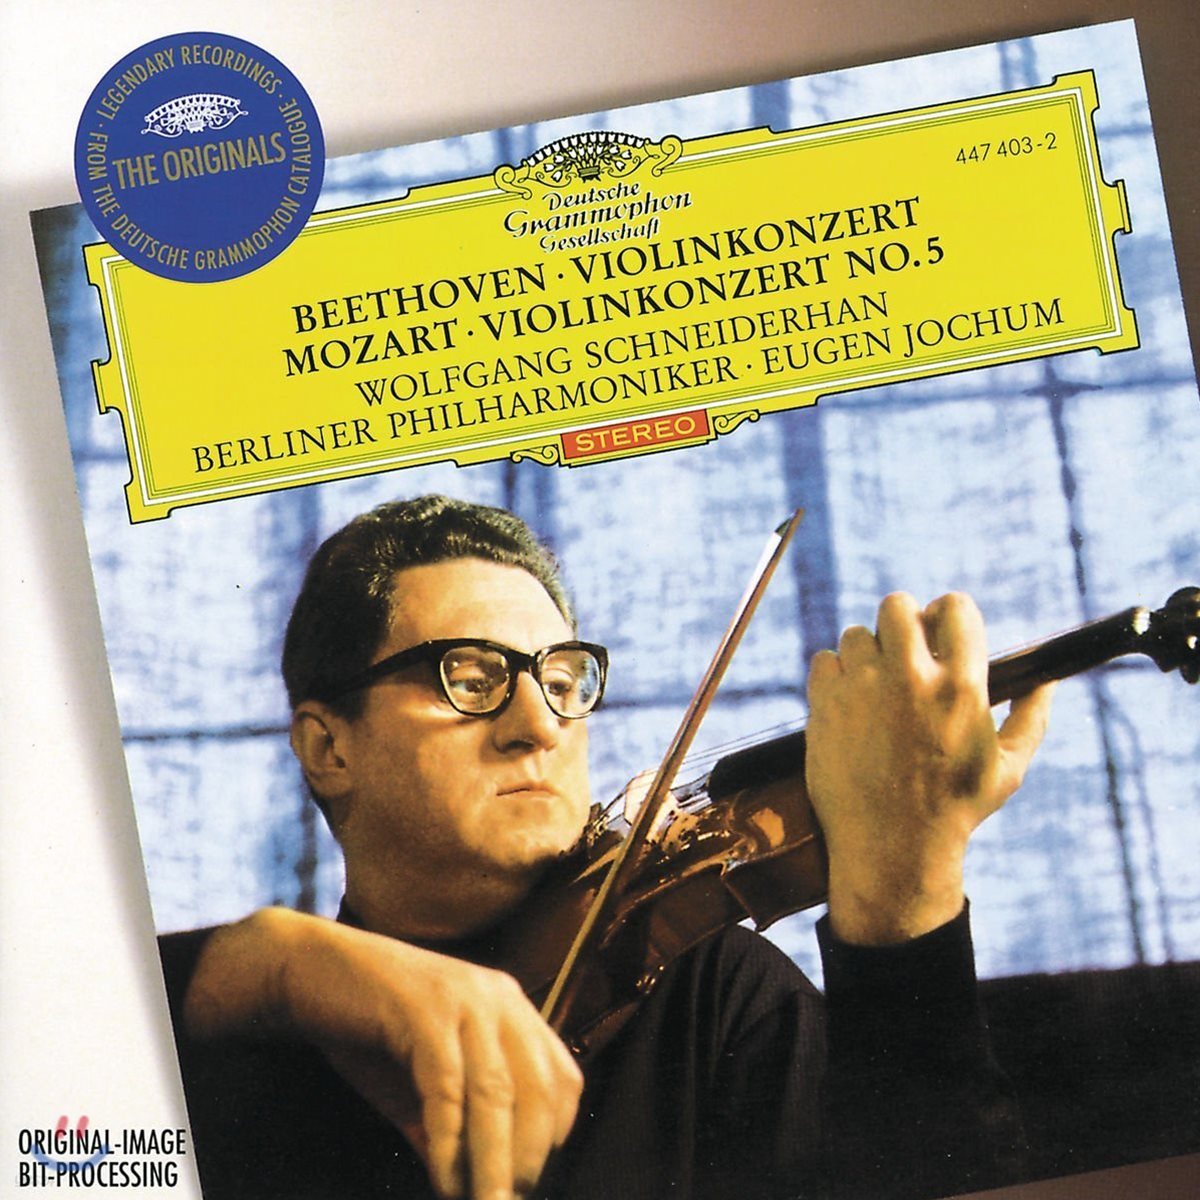 Wolfgang Schneiderhan 베토벤 / 모차르트: 바이올린 협주곡 5번 - 슈나이더한